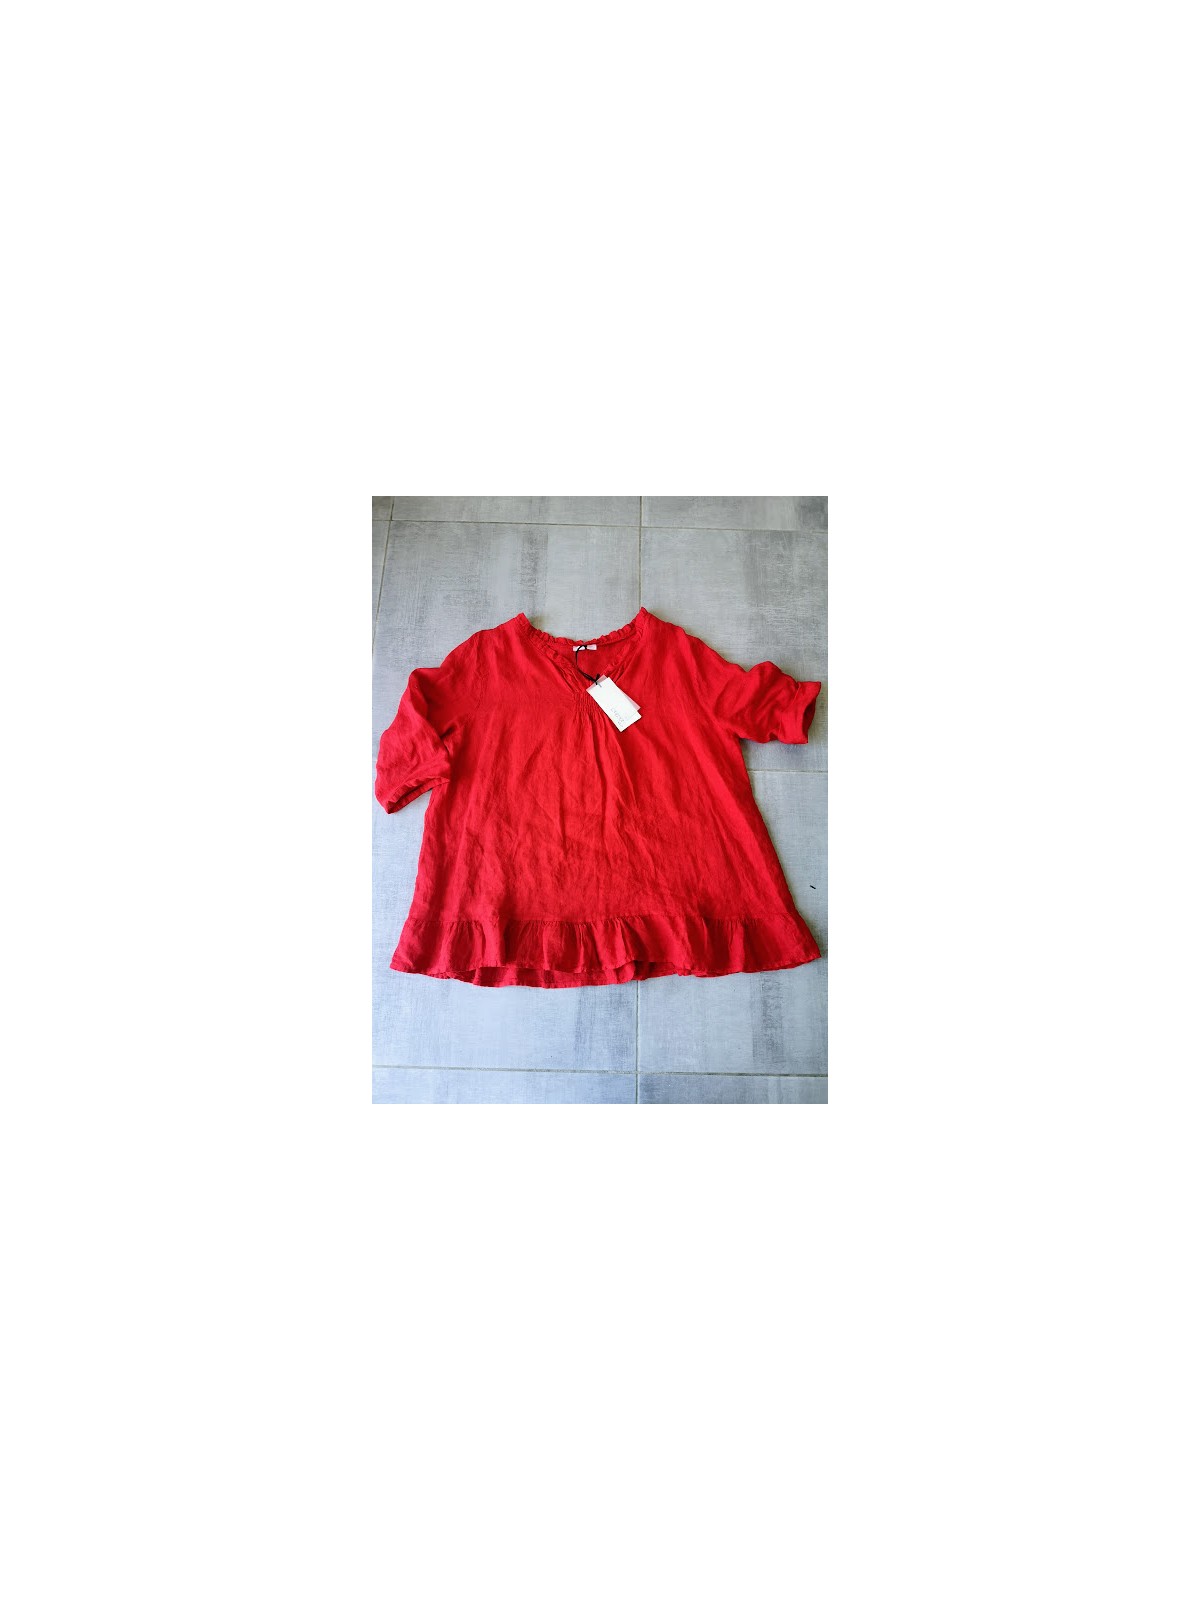 Blouse oversize lin rouge manche mi-longues l 4 vue blouse au sol l Tilleulmenthe boutique de mode femme en ligne